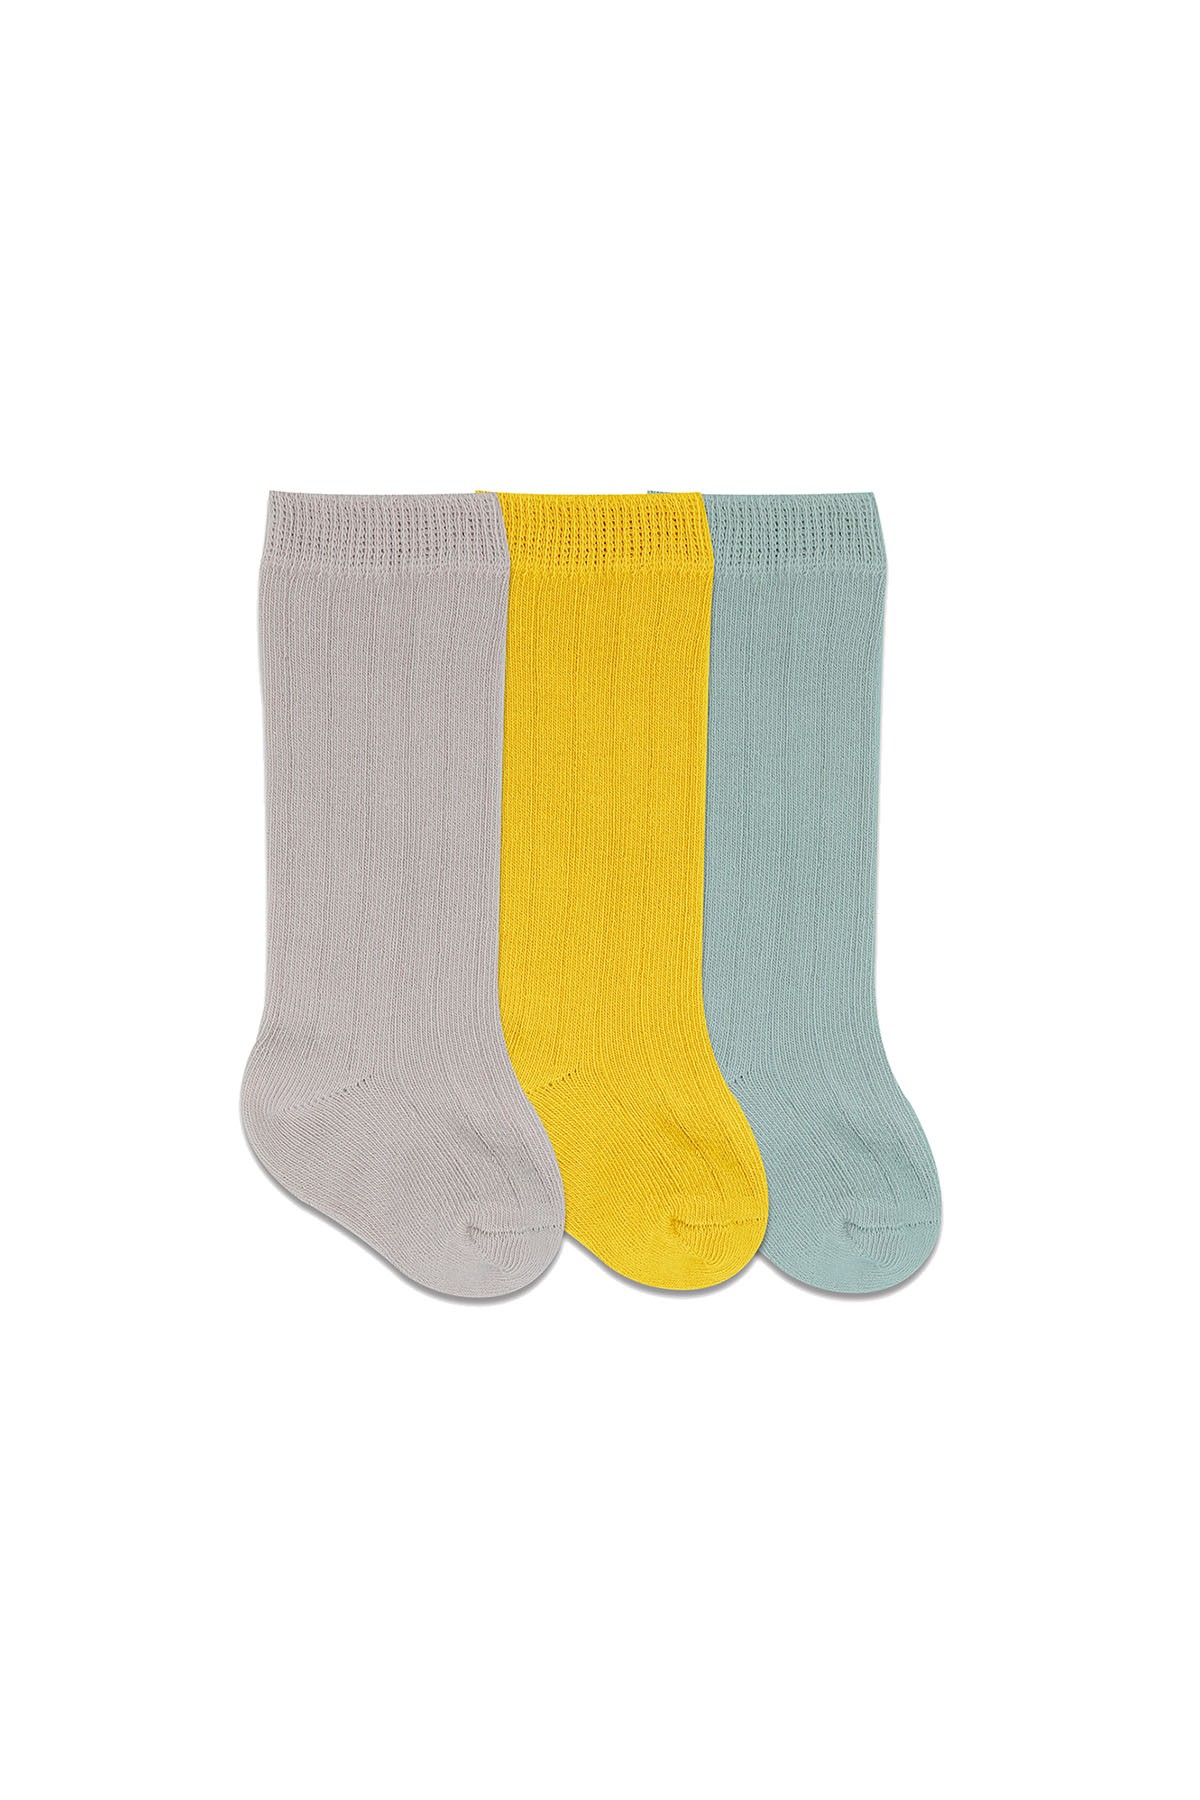 Bistyle 3'lü Dizaltı Bebek Çorabı Sarı Çok Renkli